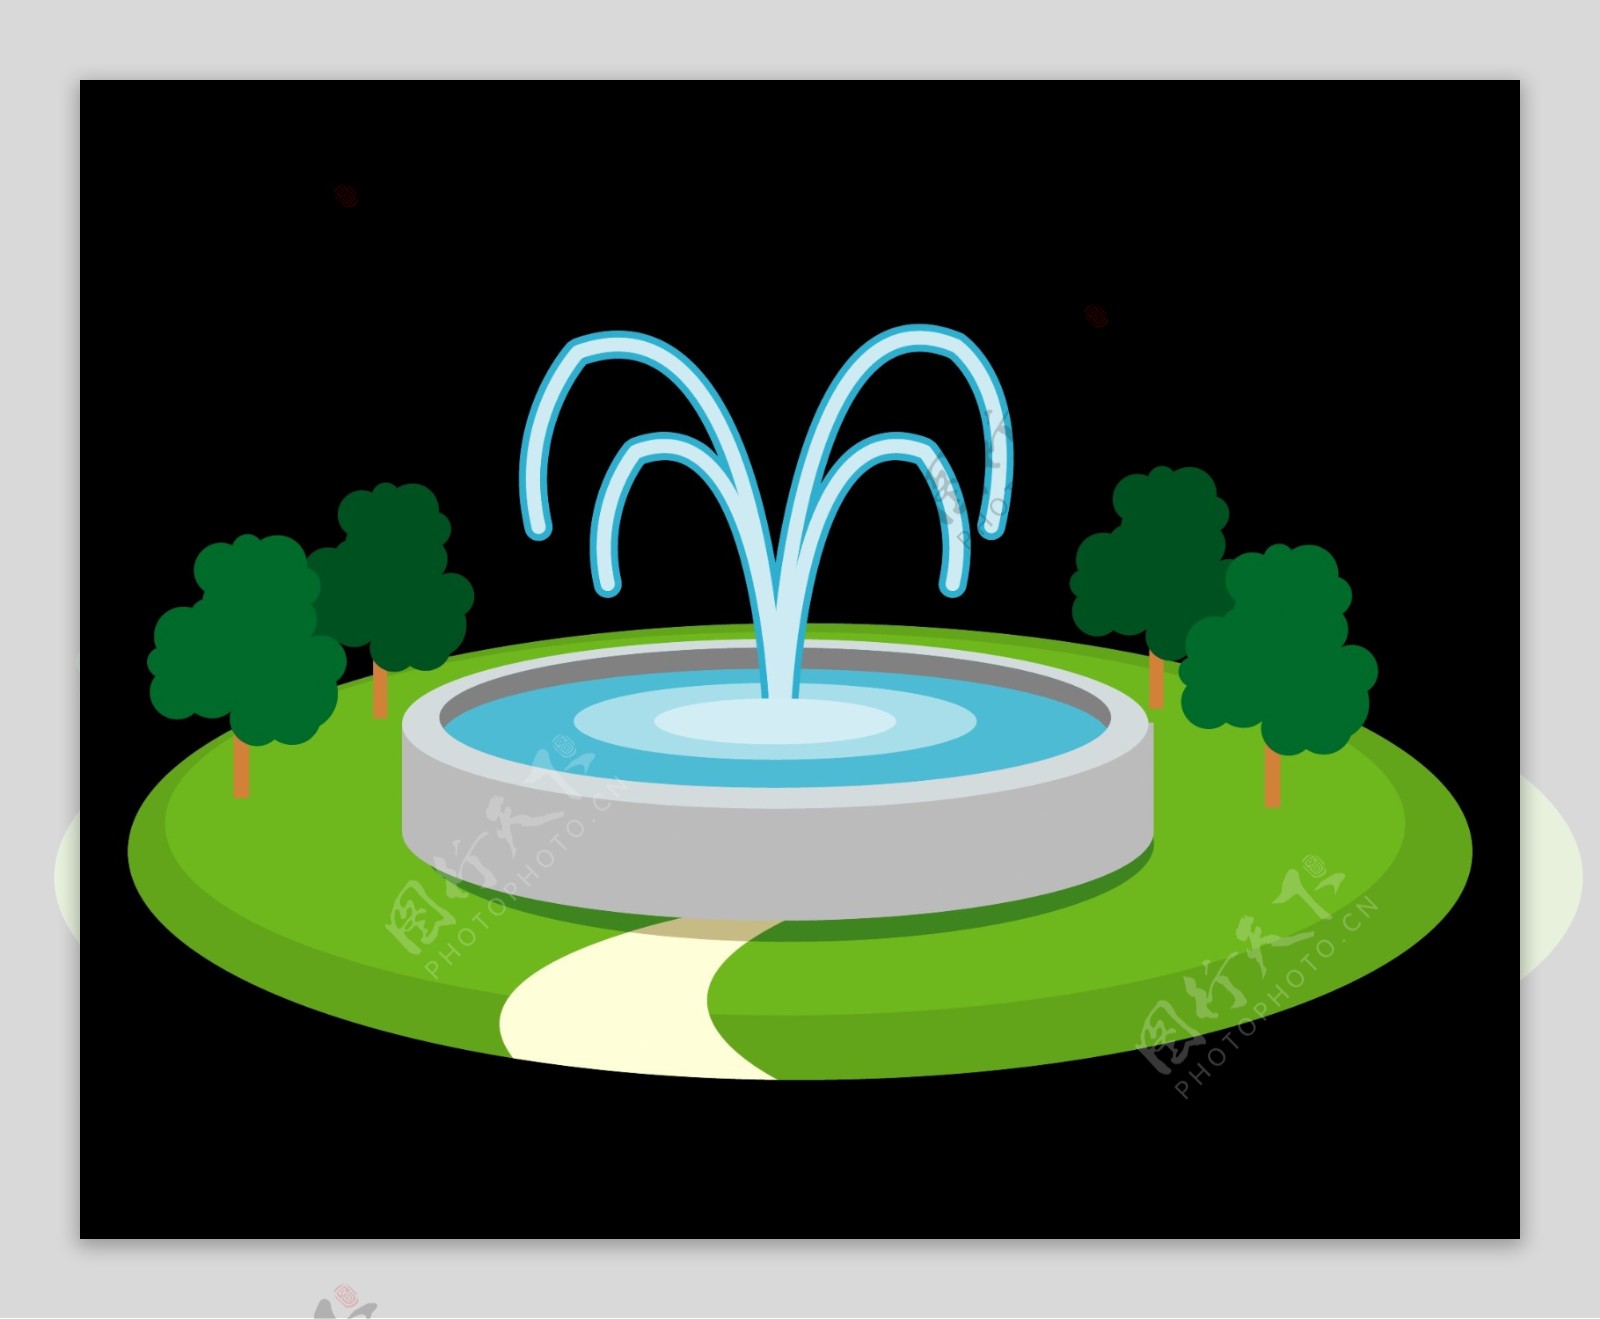 绿色环保喷水池效果图矢量图片